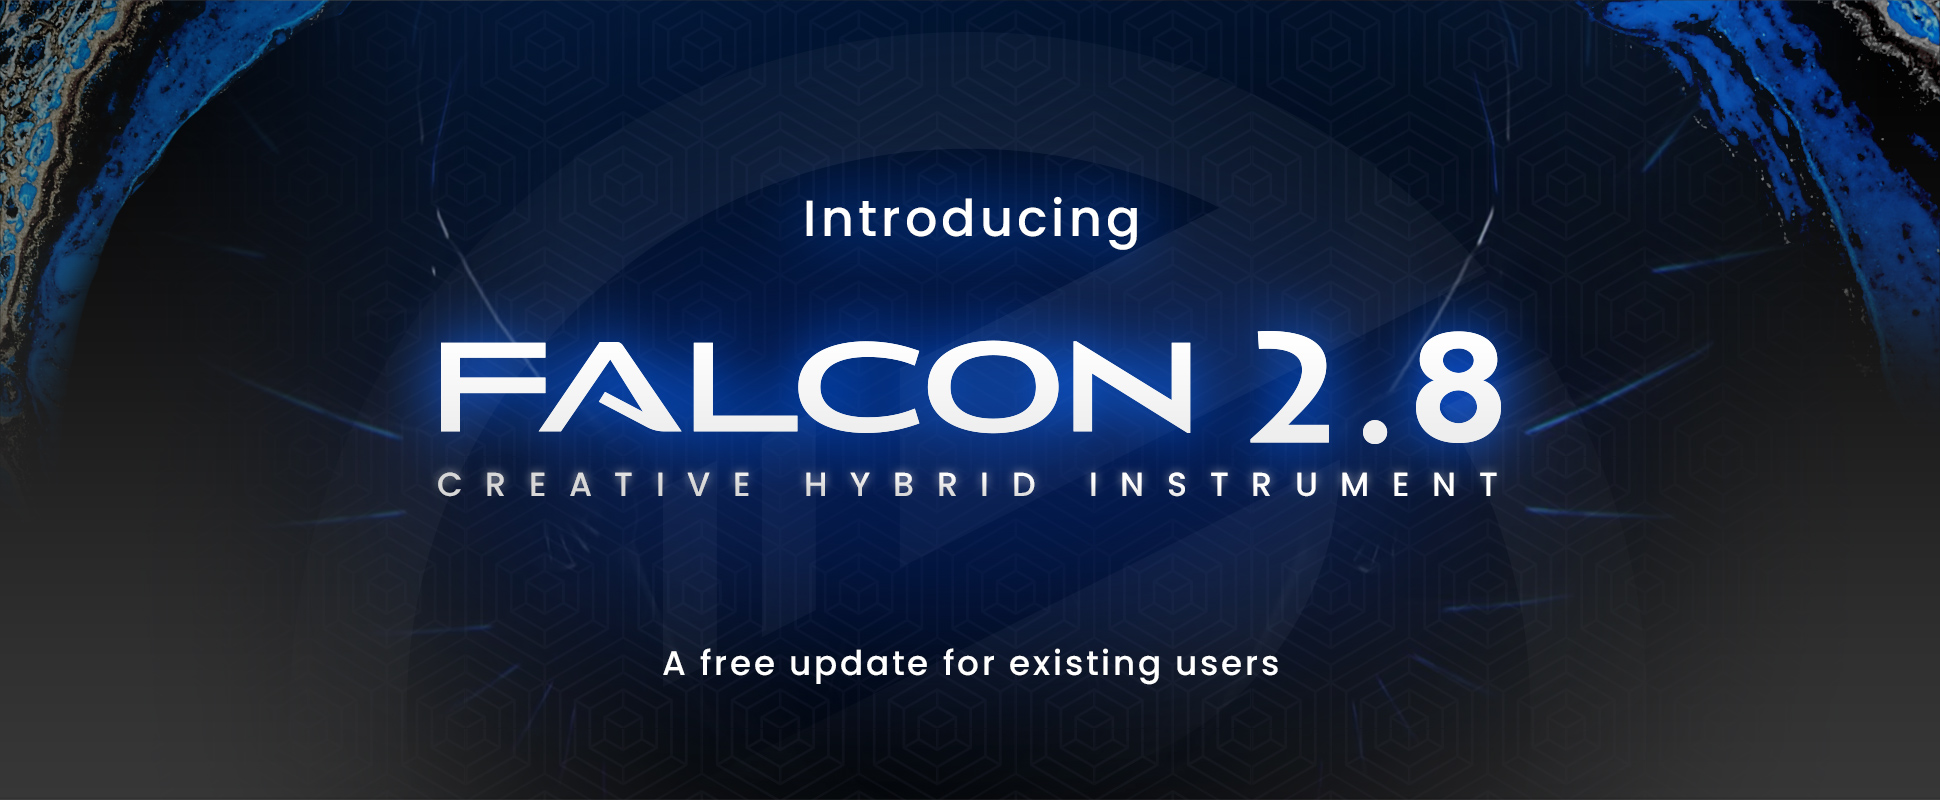 Falcon 2.8 - NEW